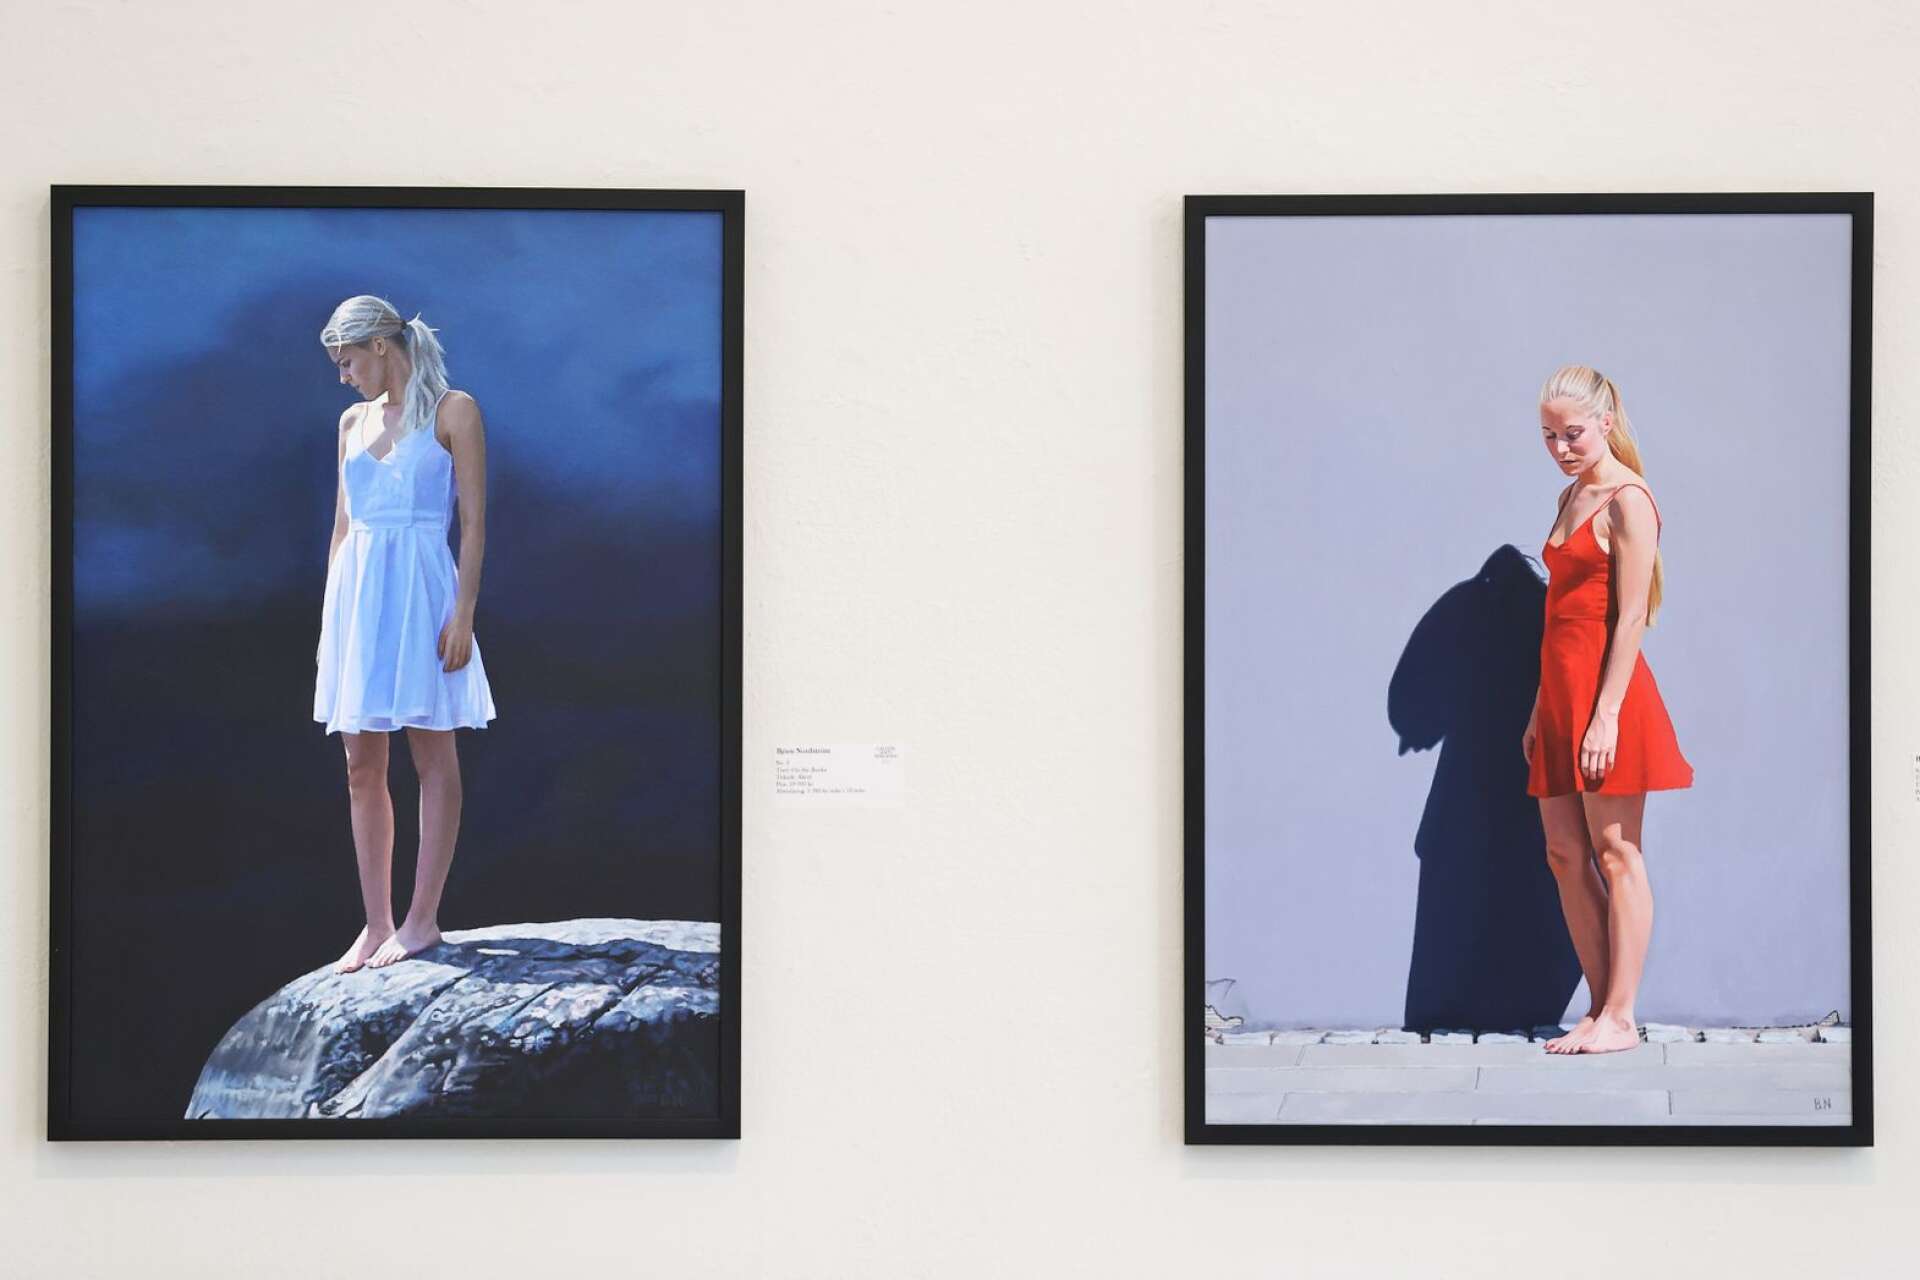 Björn Nordström vill måla kvinnor med naturlighet och tidlöshet, utan poserande eller stajlade idealversioner. Bilderna har ofta något melankoliskt över sig.